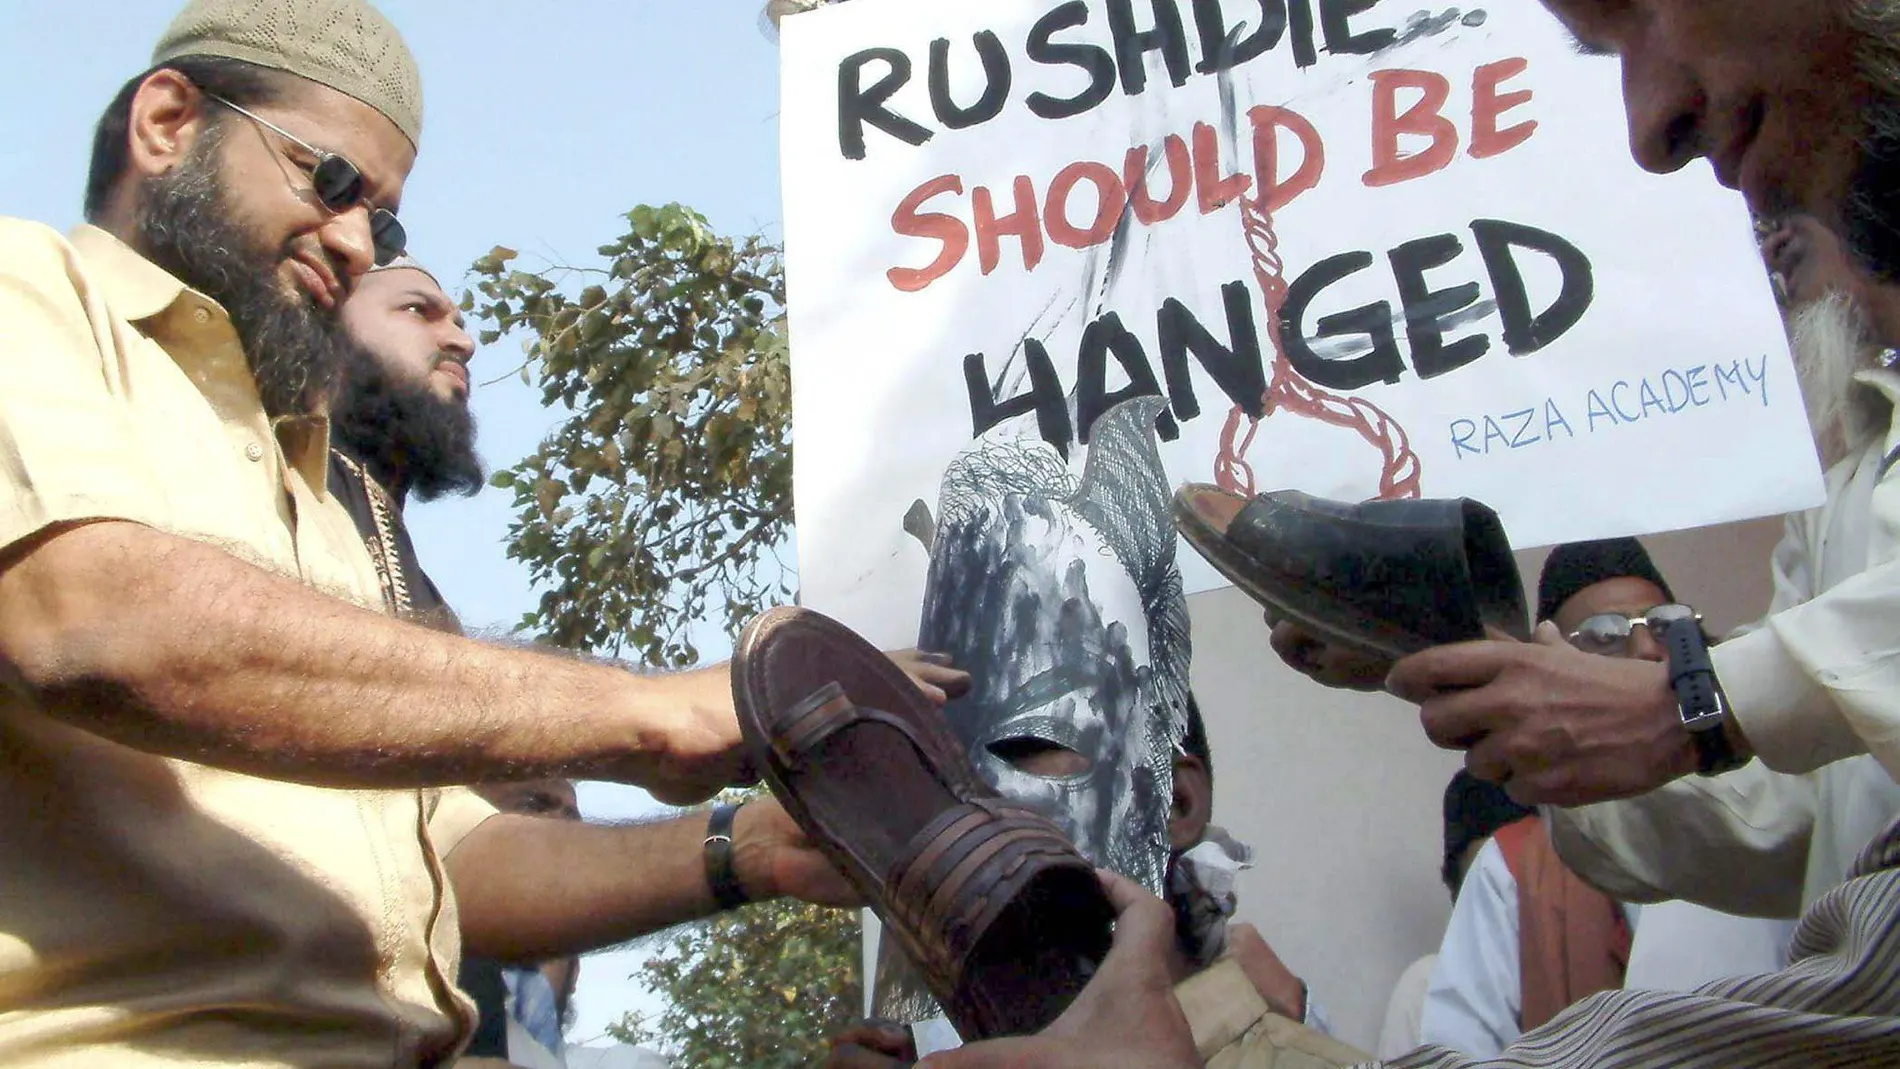 Durante una visita a Bombay en 2004, Rushdie fue amenazado de muerte por varios manifestantes